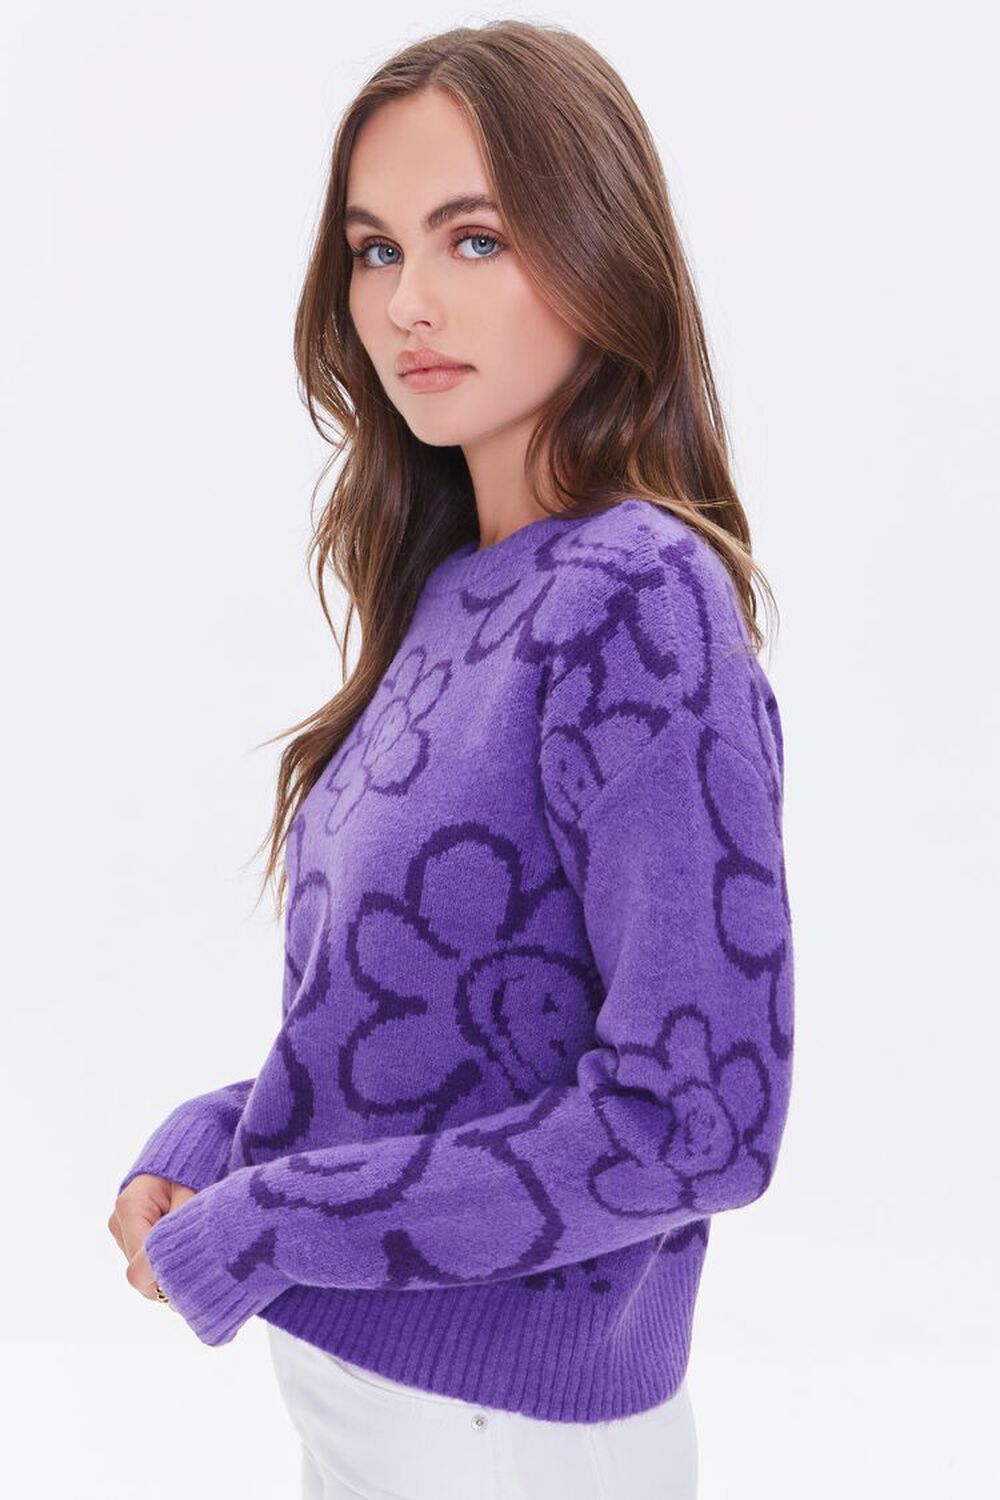 Esmara Women's Crew Neck Sweater Happy Purple Pullover Size Small 4/6